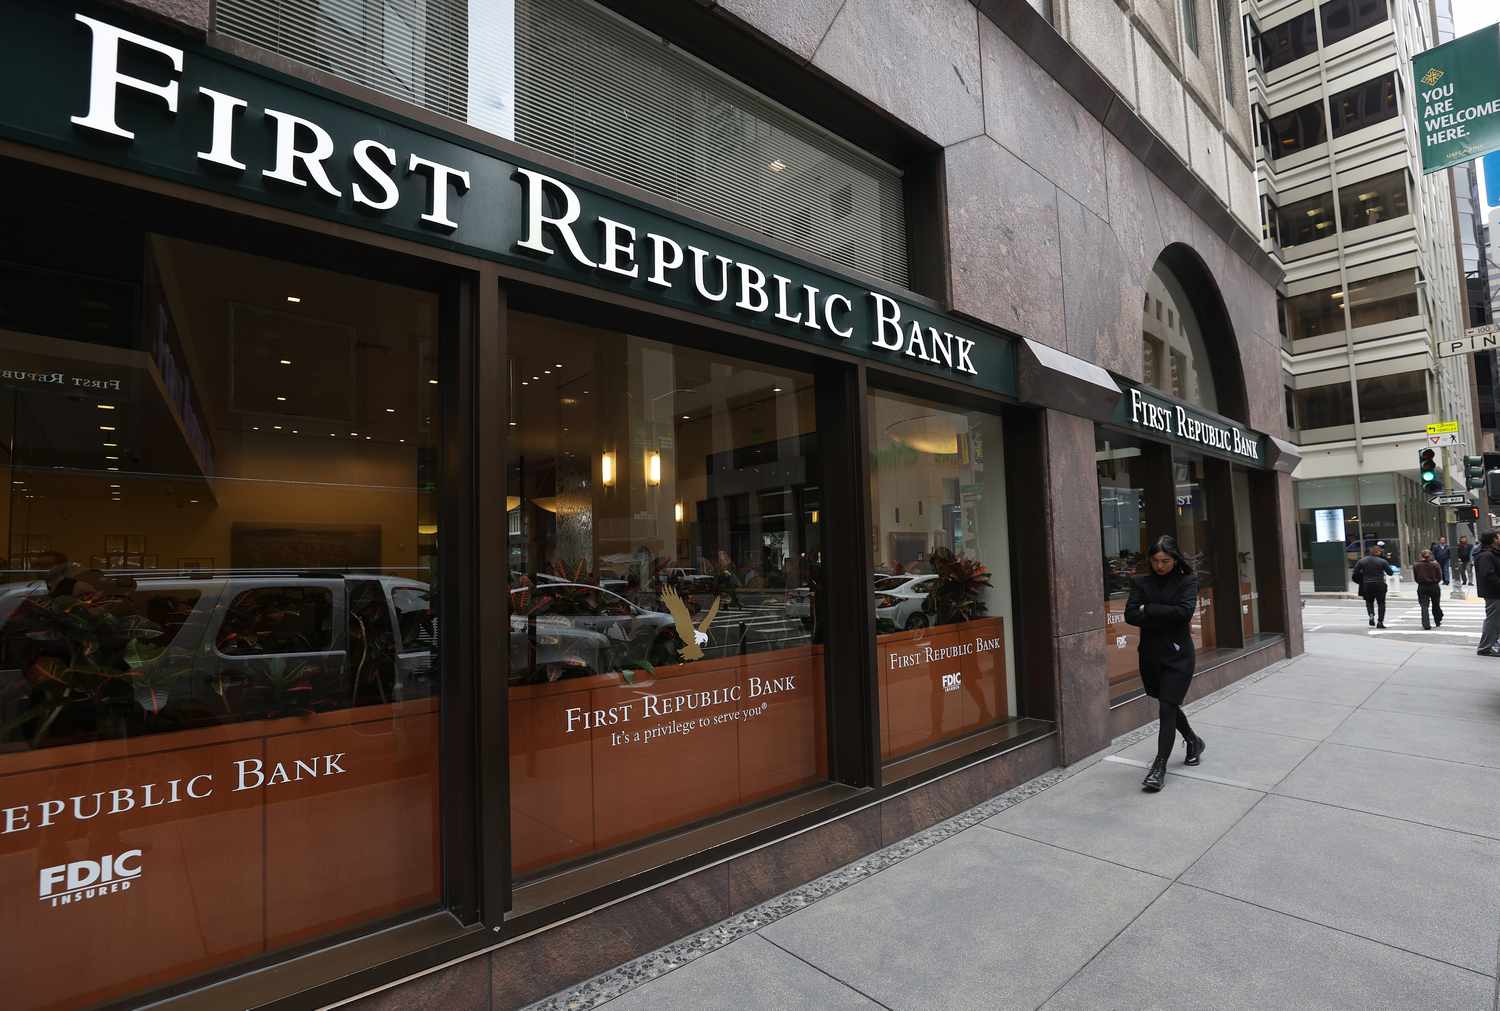 First Republic, 14e banque américaine par la taille des actifs, était sur la sellette depuis plusieurs jours après les défaillances d'autres banques.